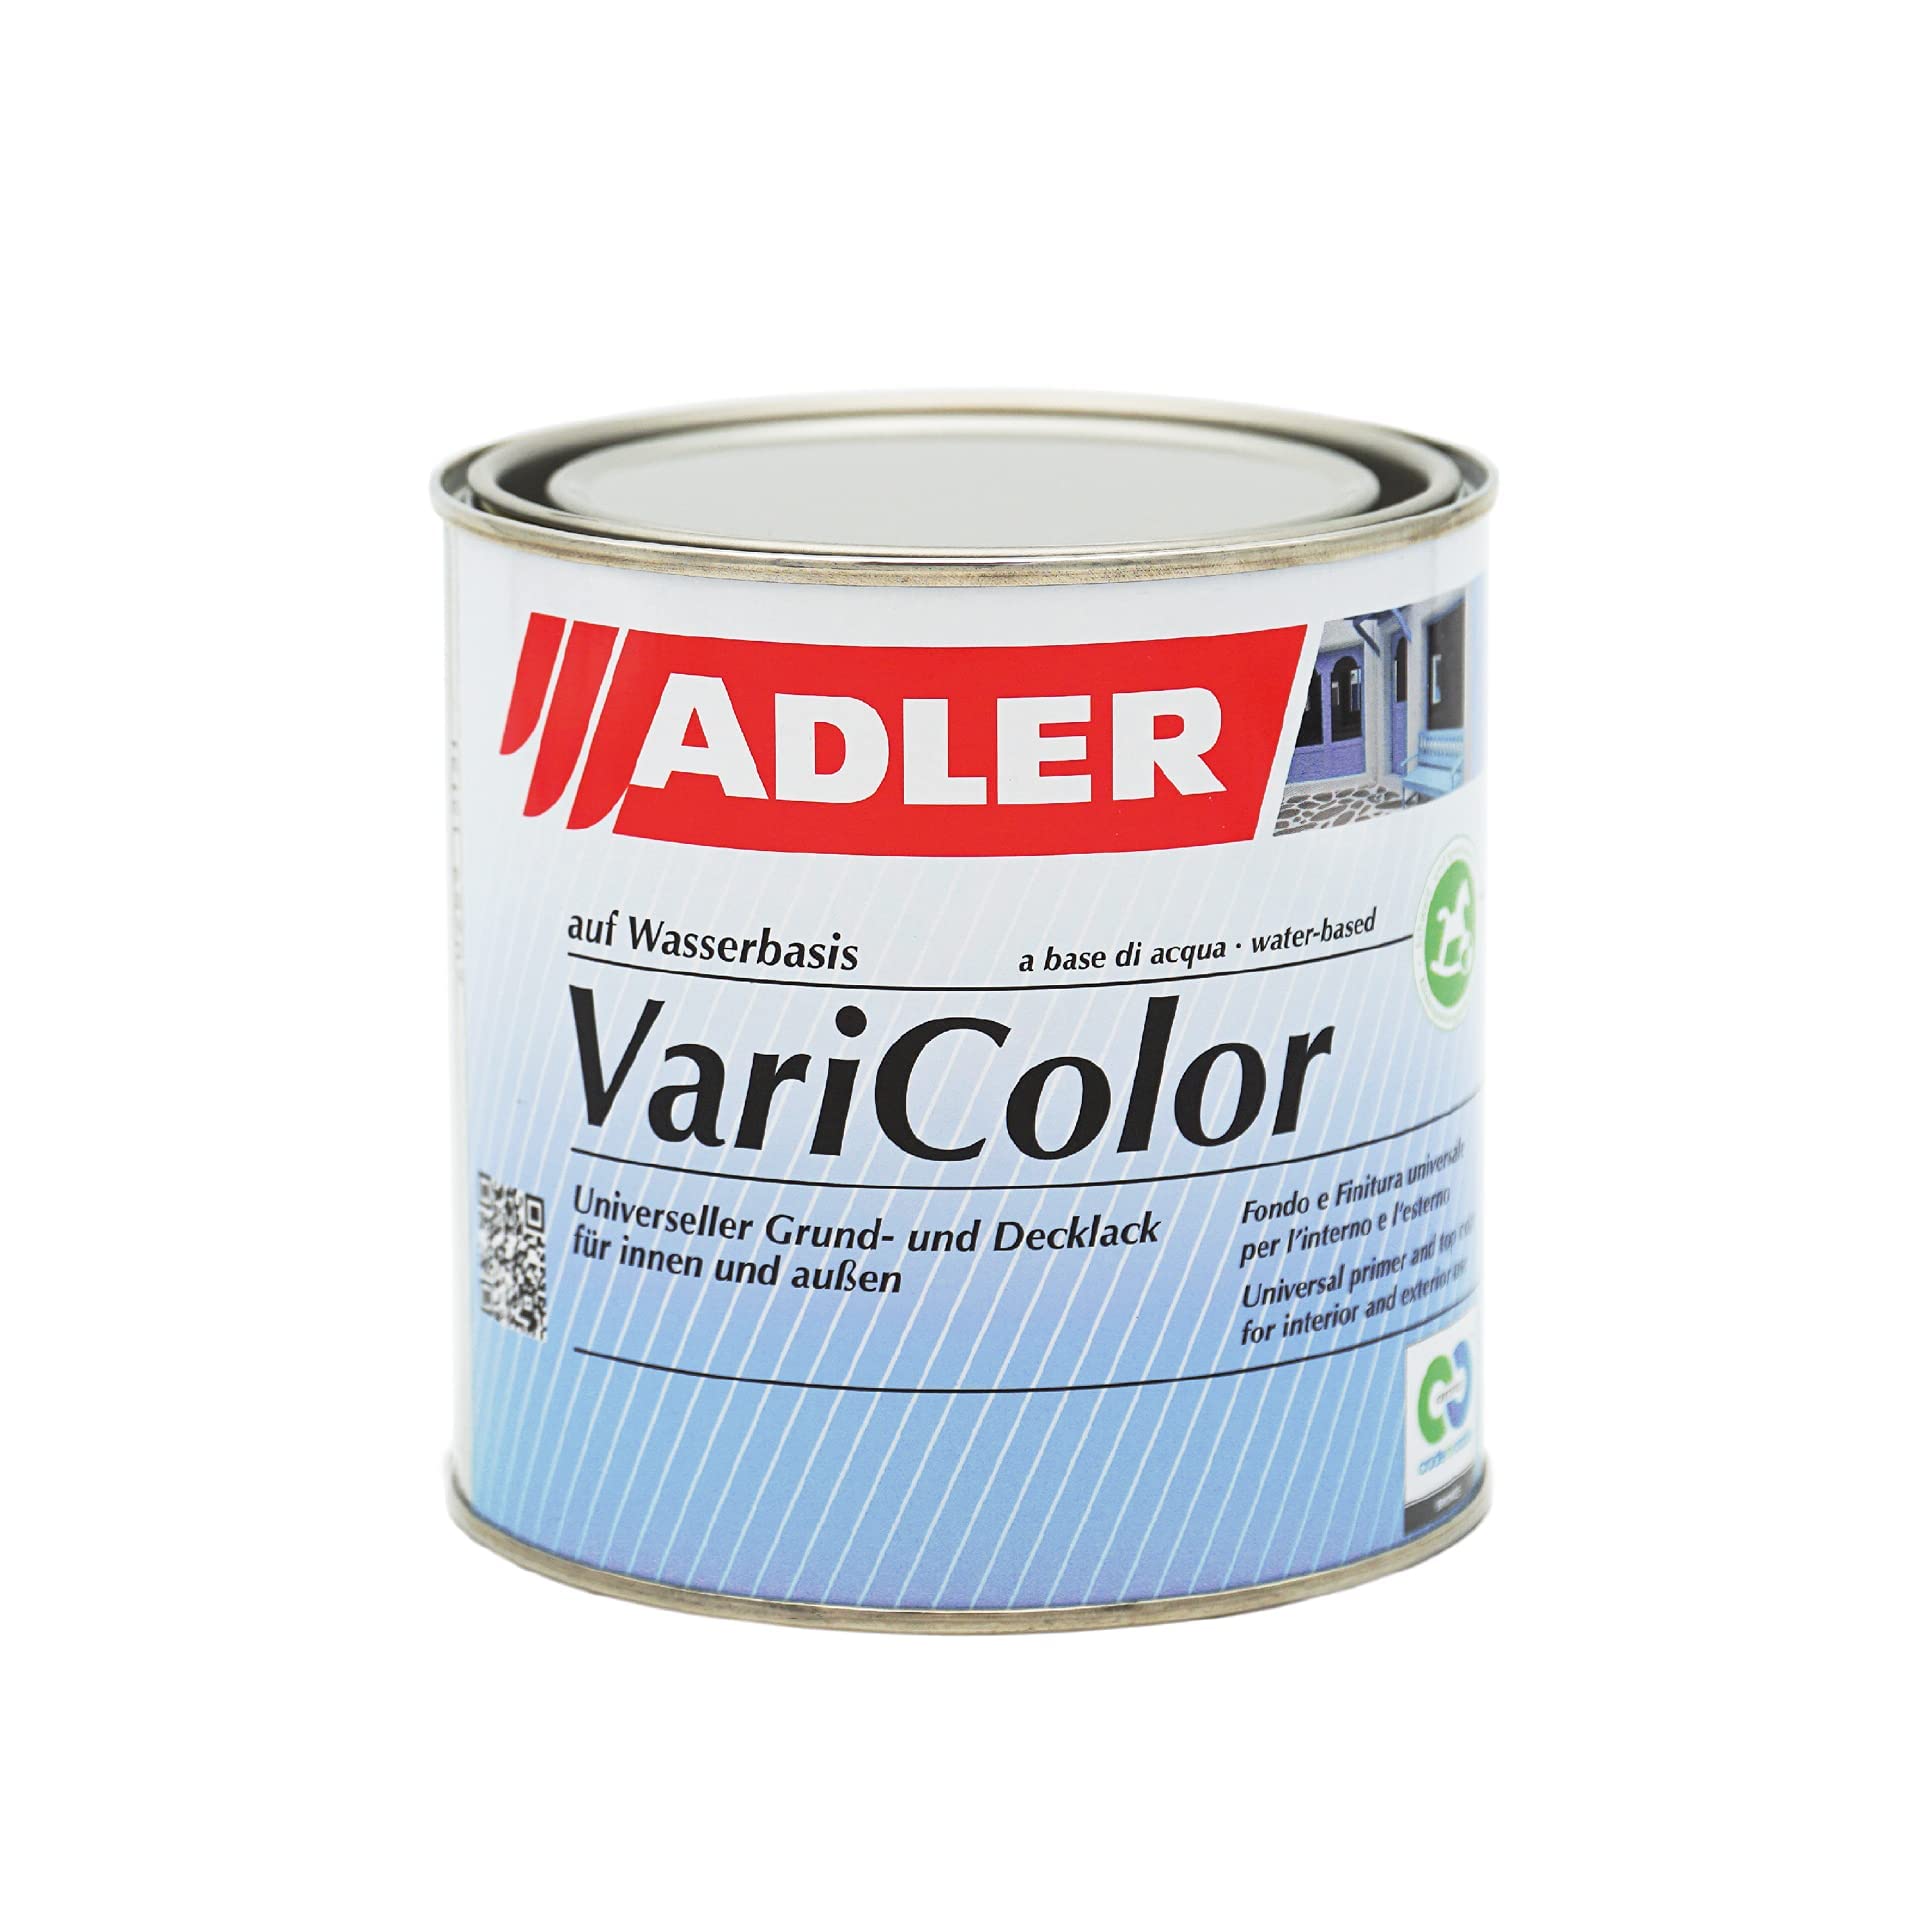 ADLER Varicolor 2in1 Acryl Buntlack für Innen und Außen - 750 ml C12 021/6 Sunny City Beige - Wetterfester Lack und Grundierung - matt